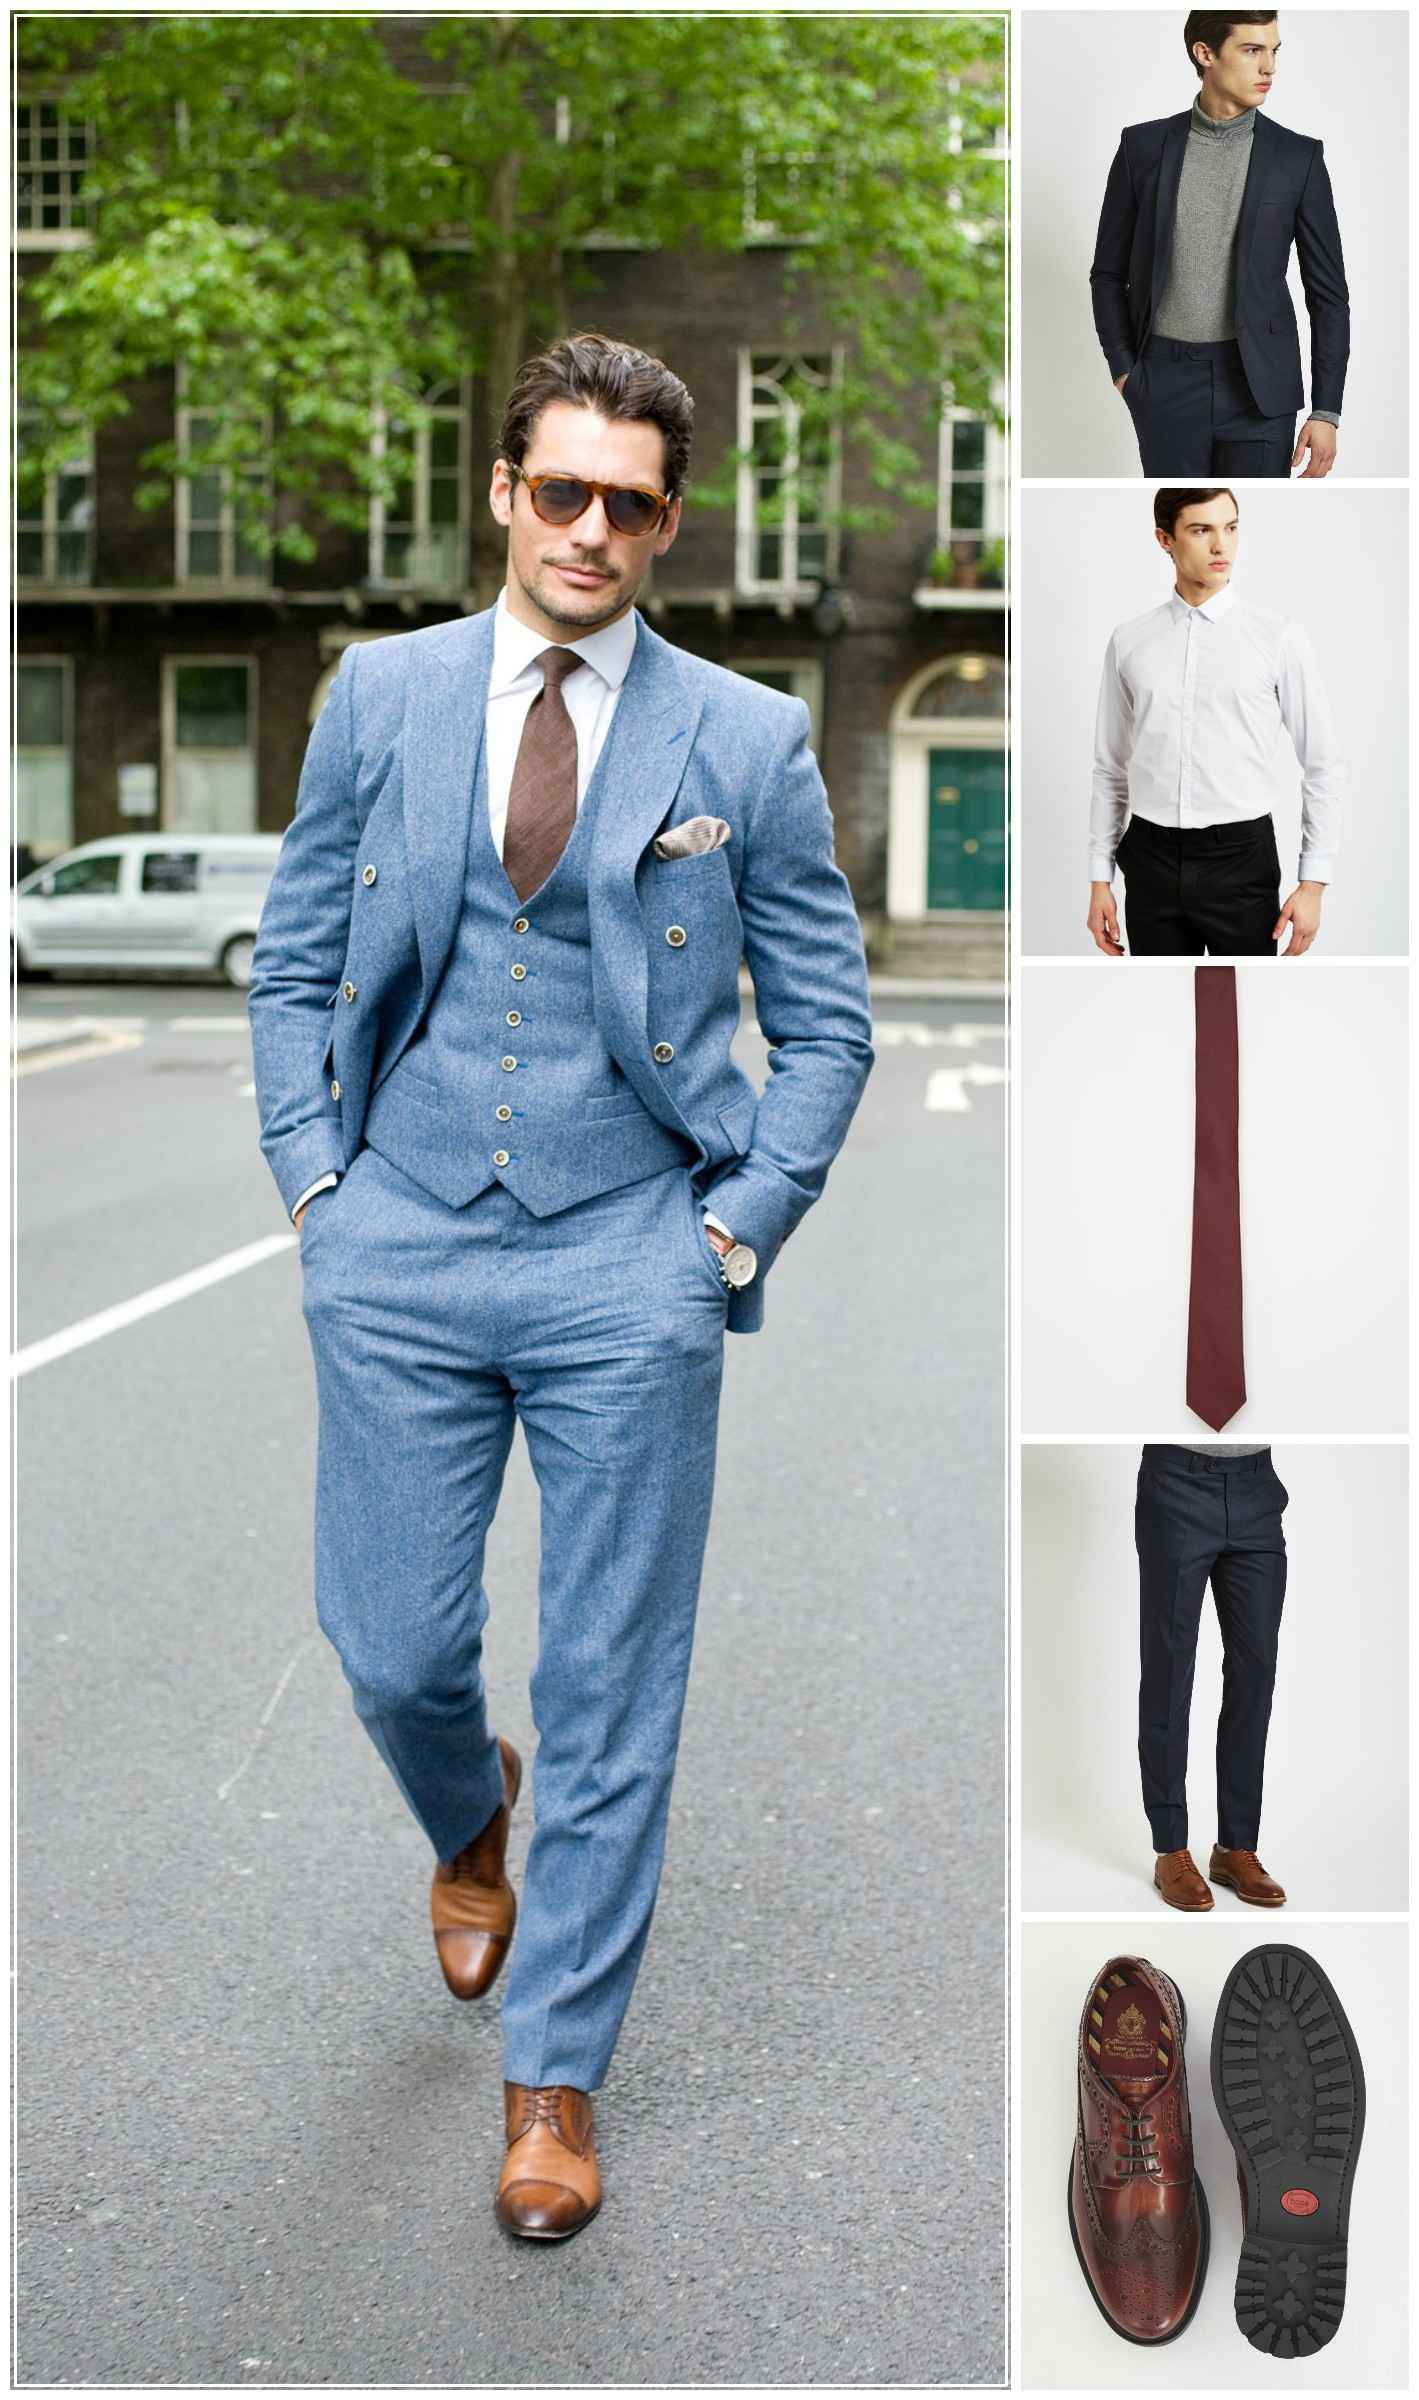 بهترین ترکیبات پیراهن و کراوات برای مردان